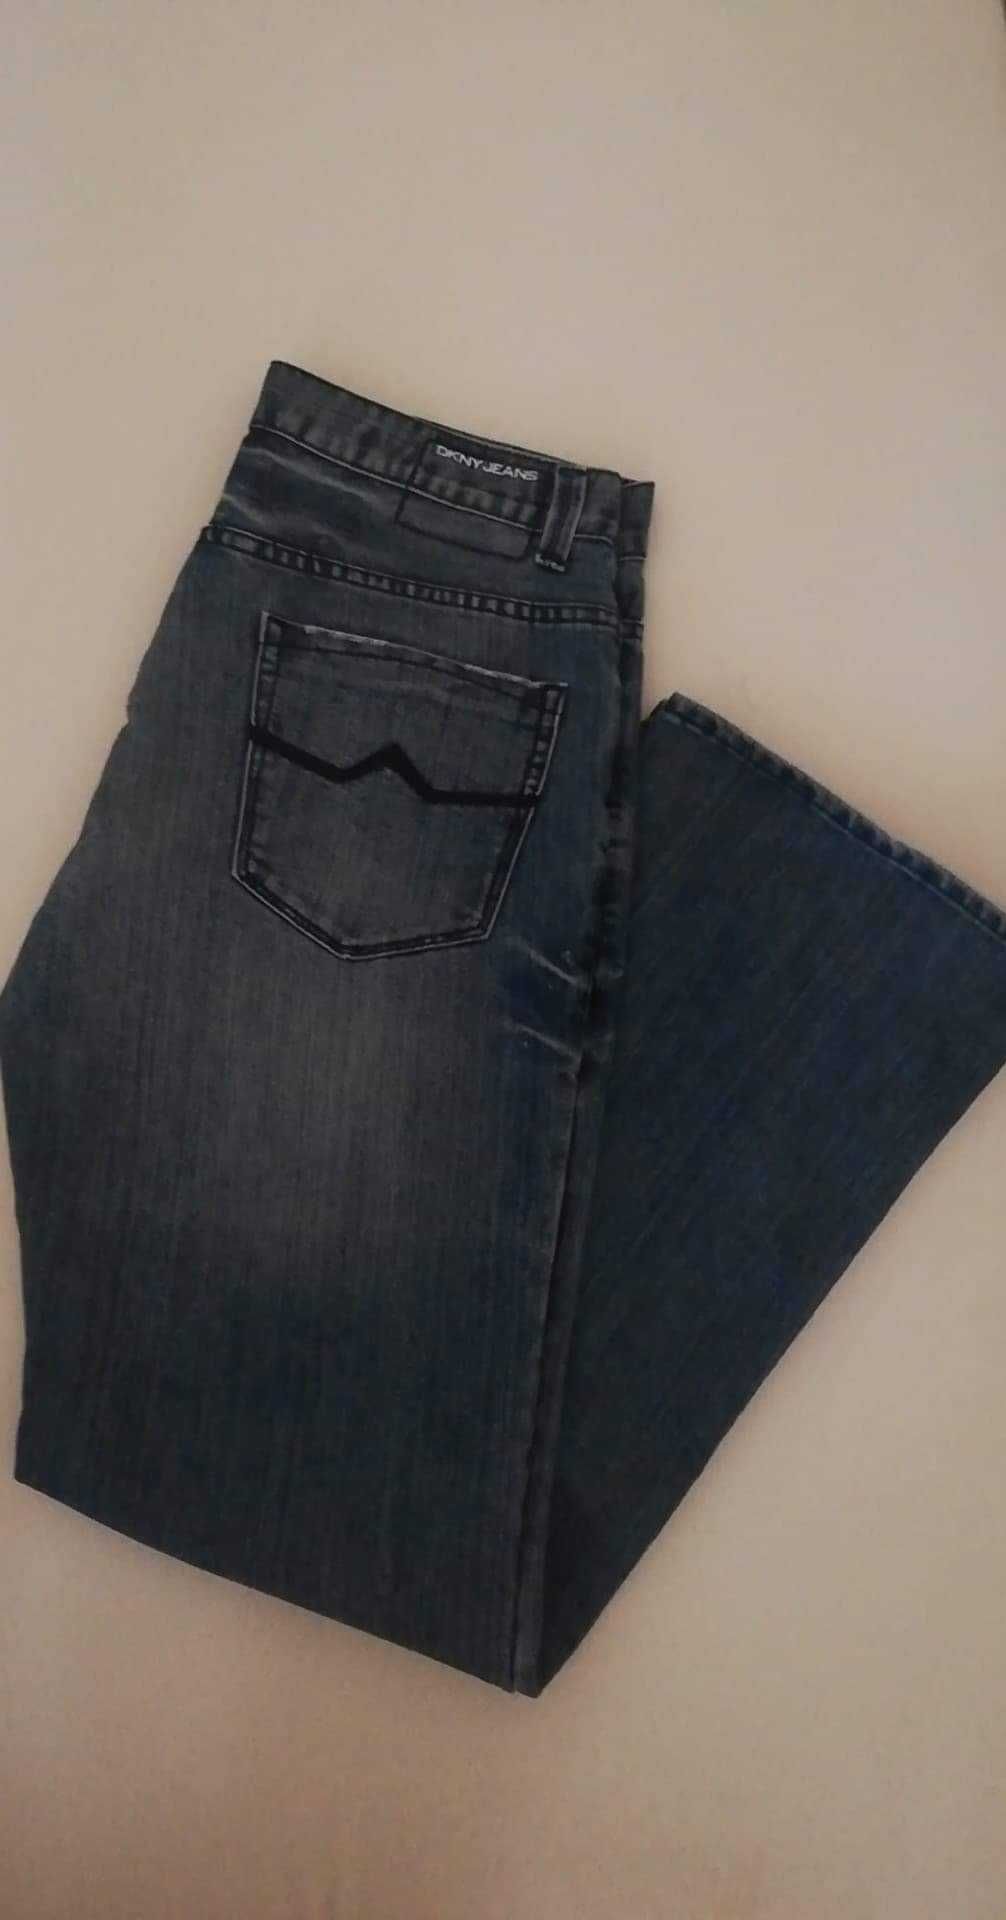 DKNY spodnie męskie jeansy proste 34/32